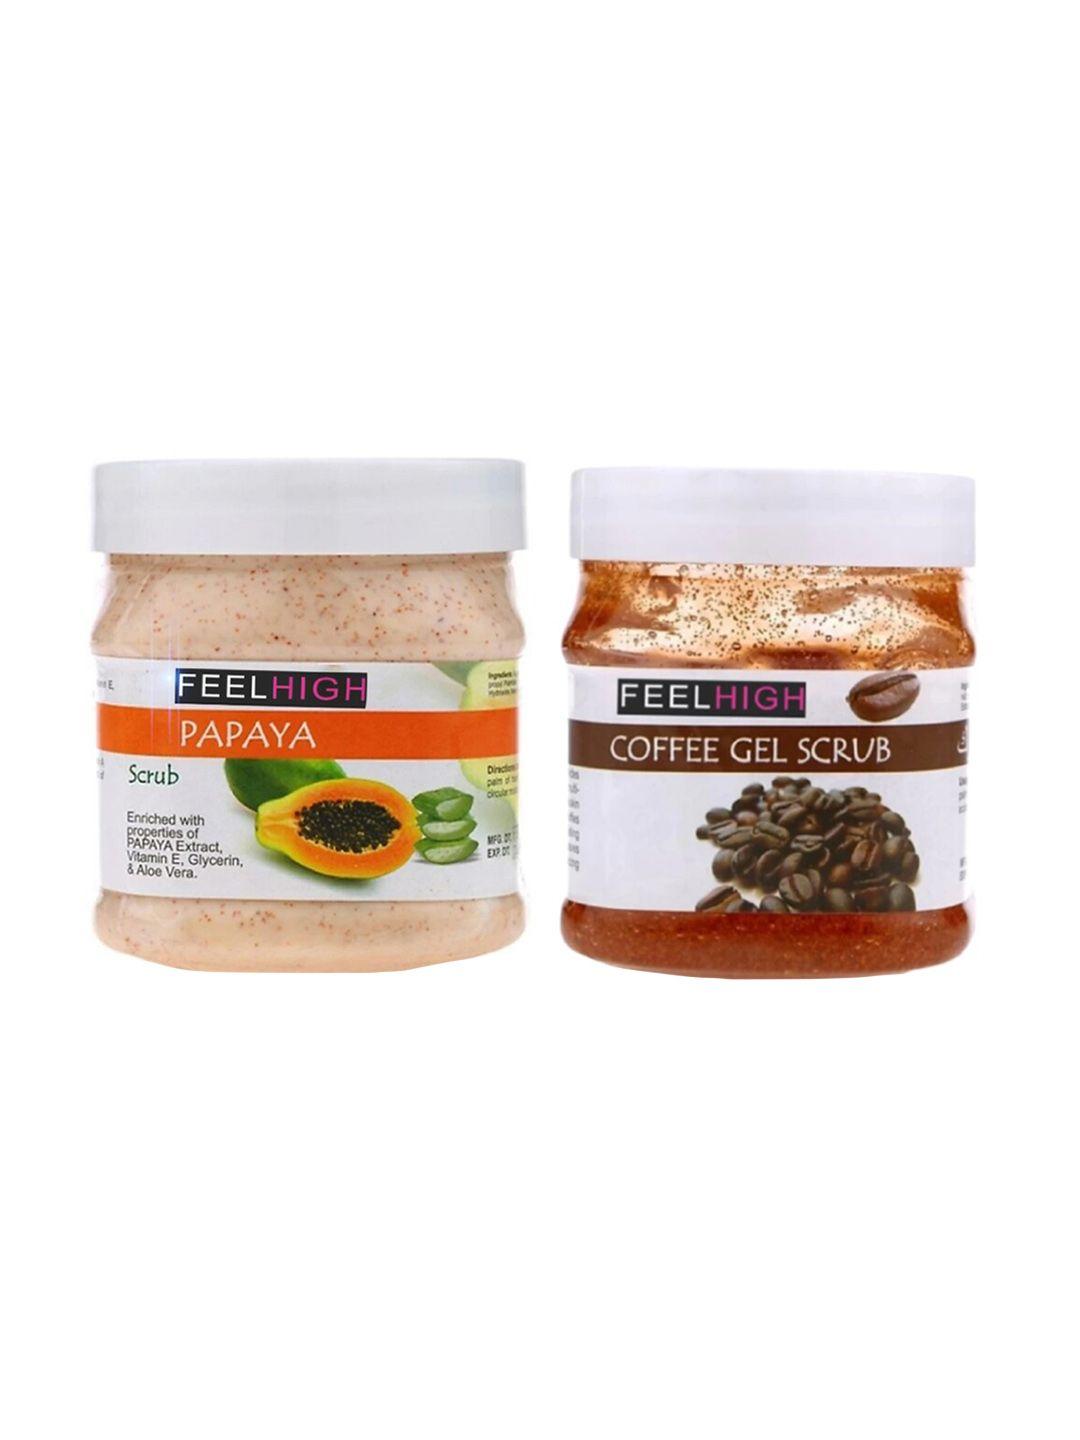 feelhigh set of 2 papaya scrub & coffee gel scrub for face & body exfoliators 500 ml each